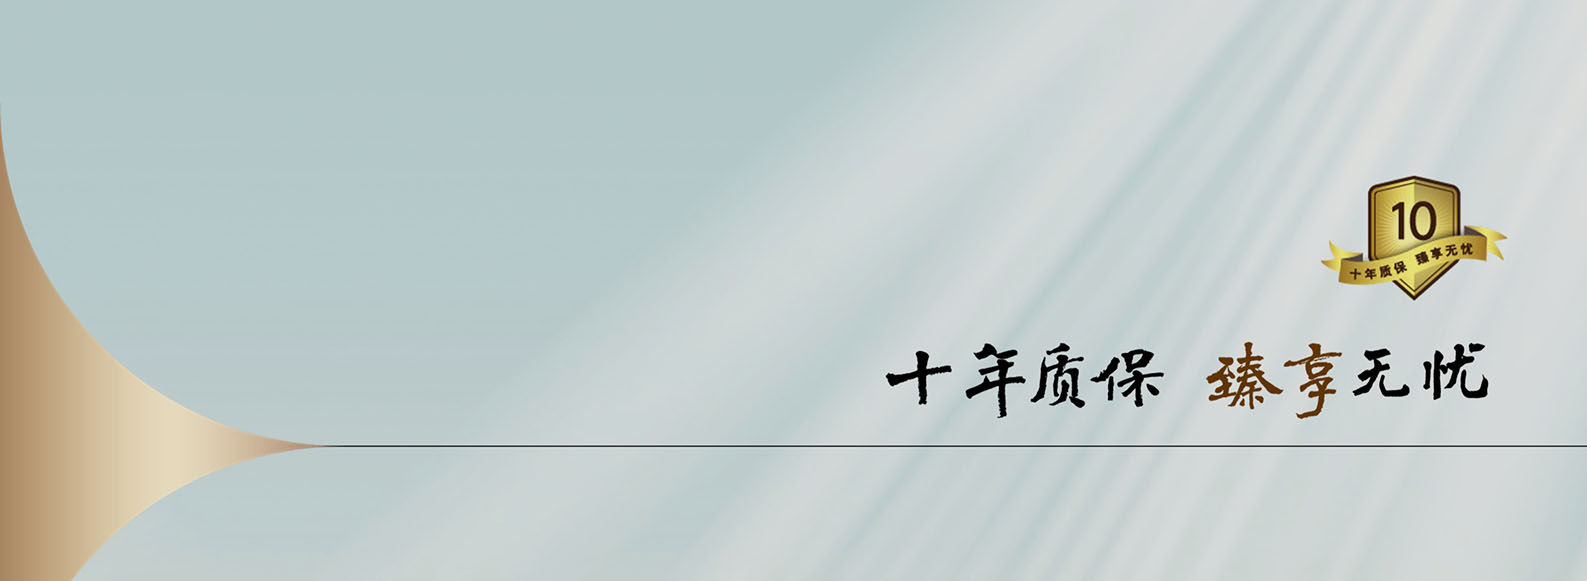 学习《质量强国建设纲要》、落实高质量发展战略方针——暨上海三菱电梯十年质保3.0正式启动！